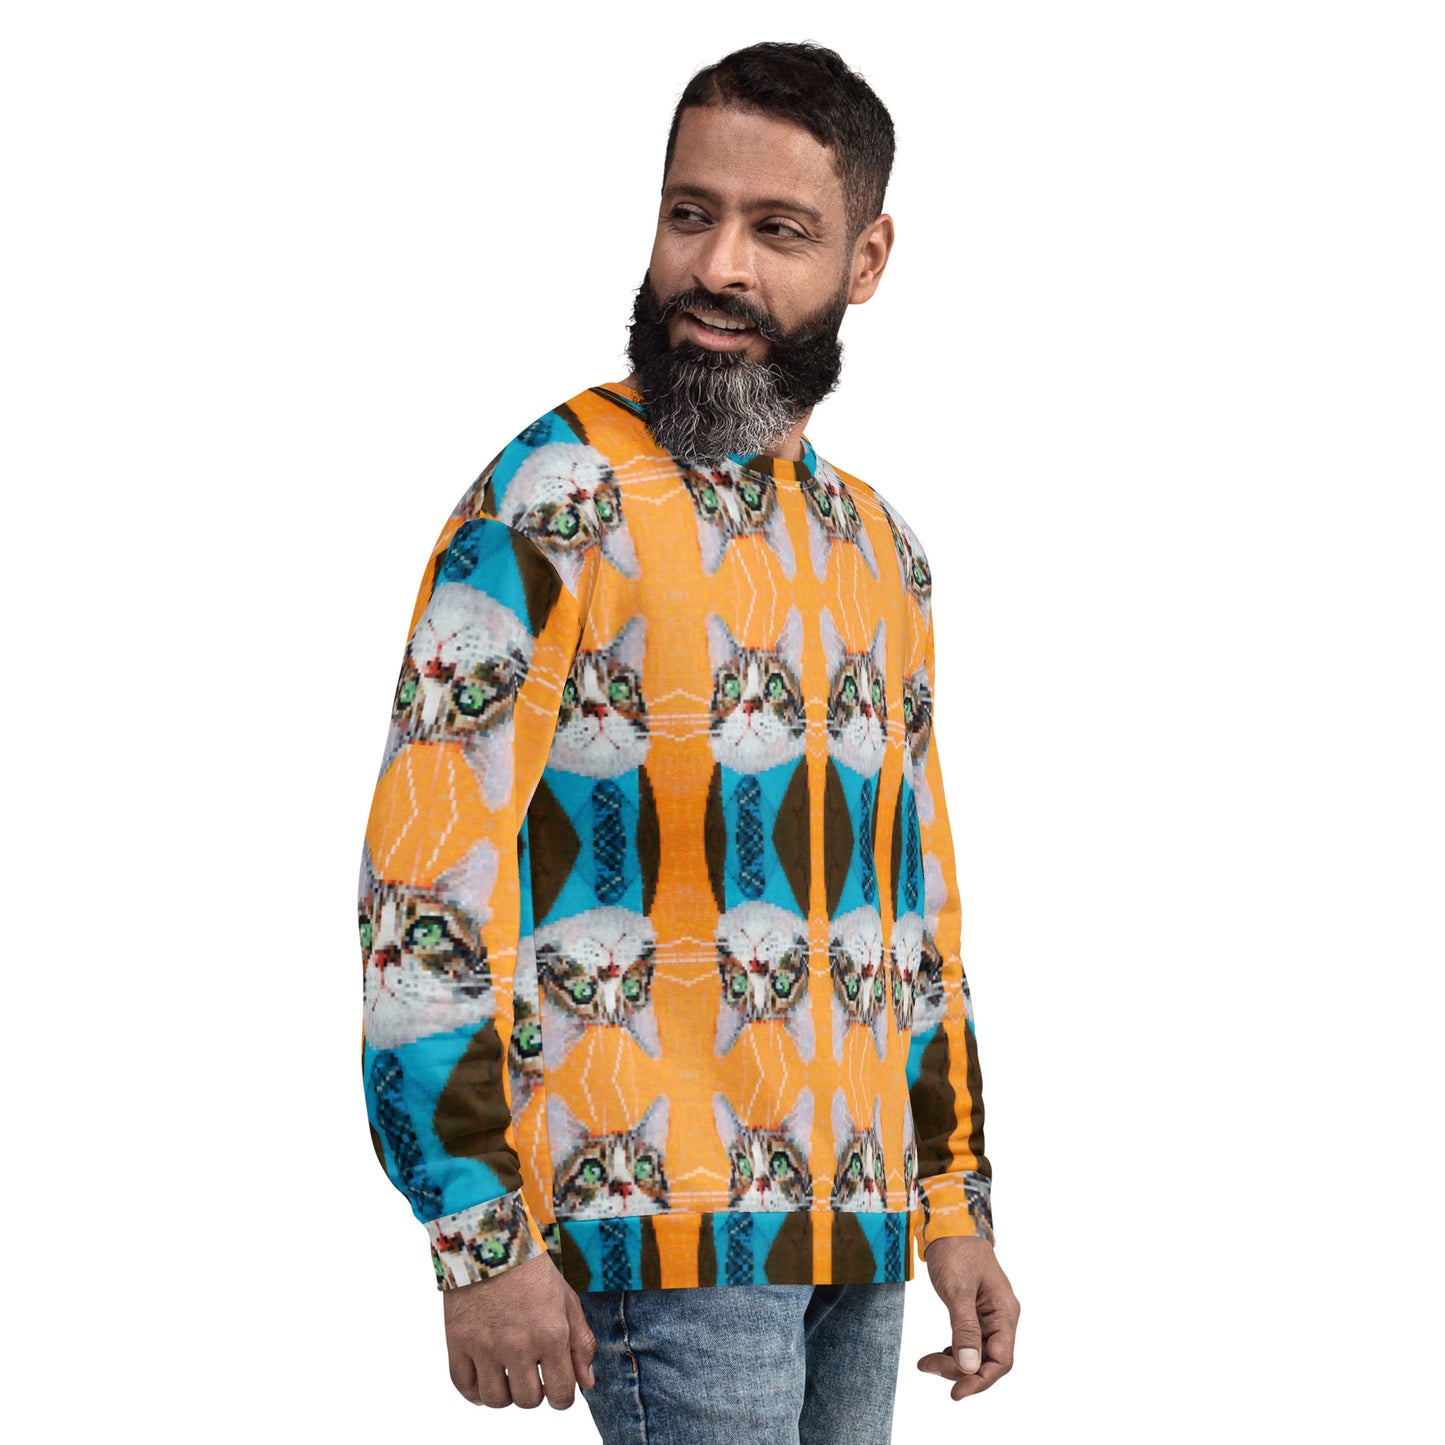 Pixel Riley Unisex Sweatshirt